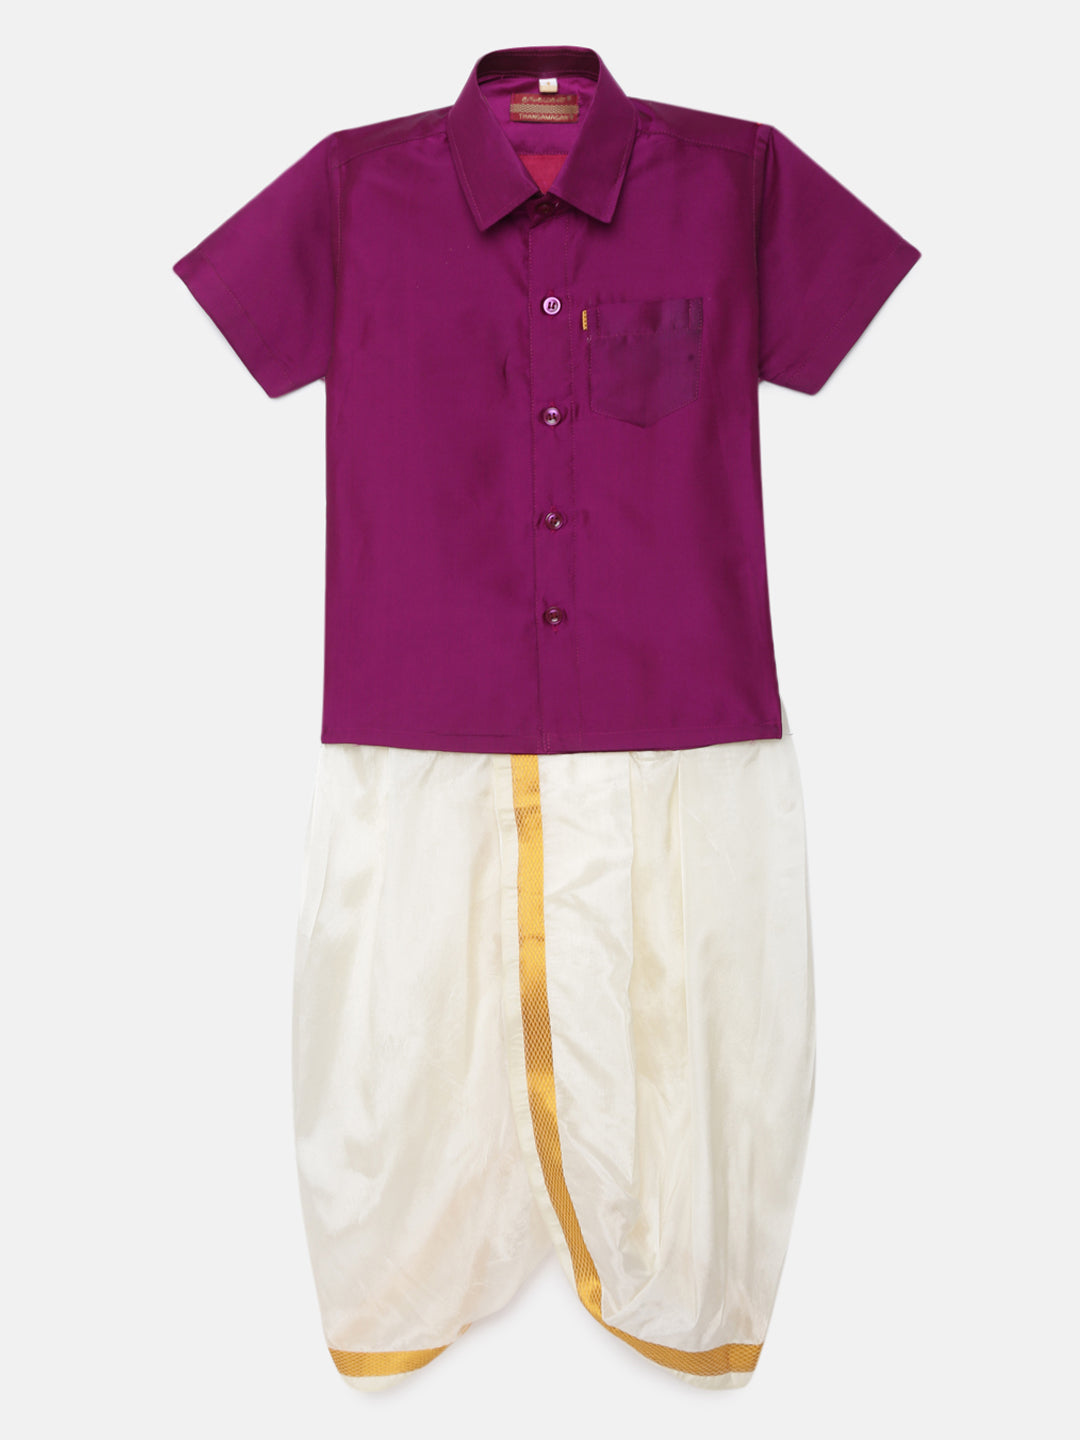 16. Boys Panjagajam & Shirt Set